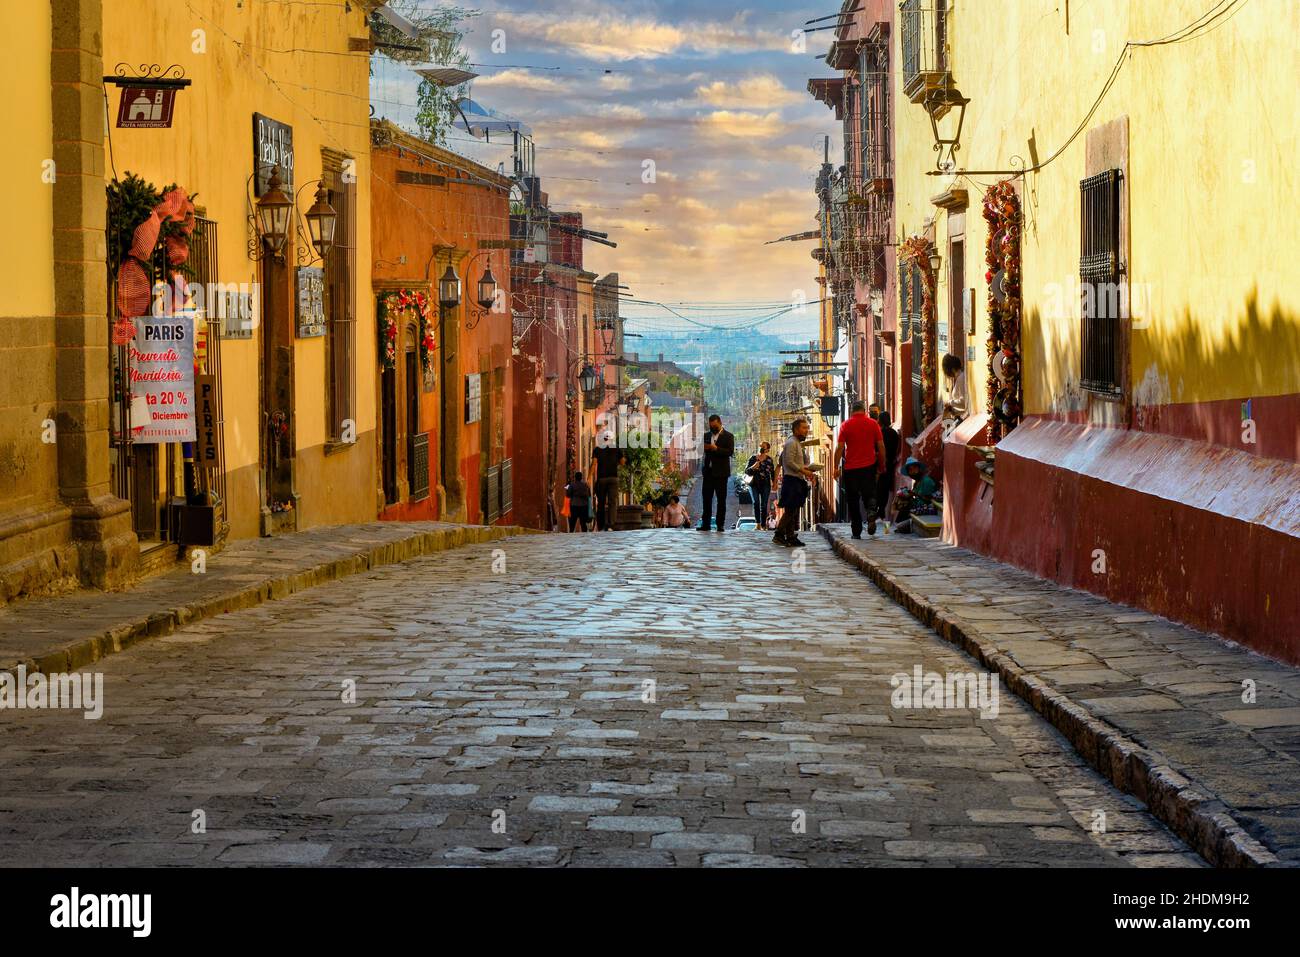 Le soleil se trouve dans une rue pavée animée de l'El Centro, à la sortie de l'El jardin, avec des boutiques et des cafés dans la ville coloniale de San Miguel de Allende, au Mexique Banque D'Images